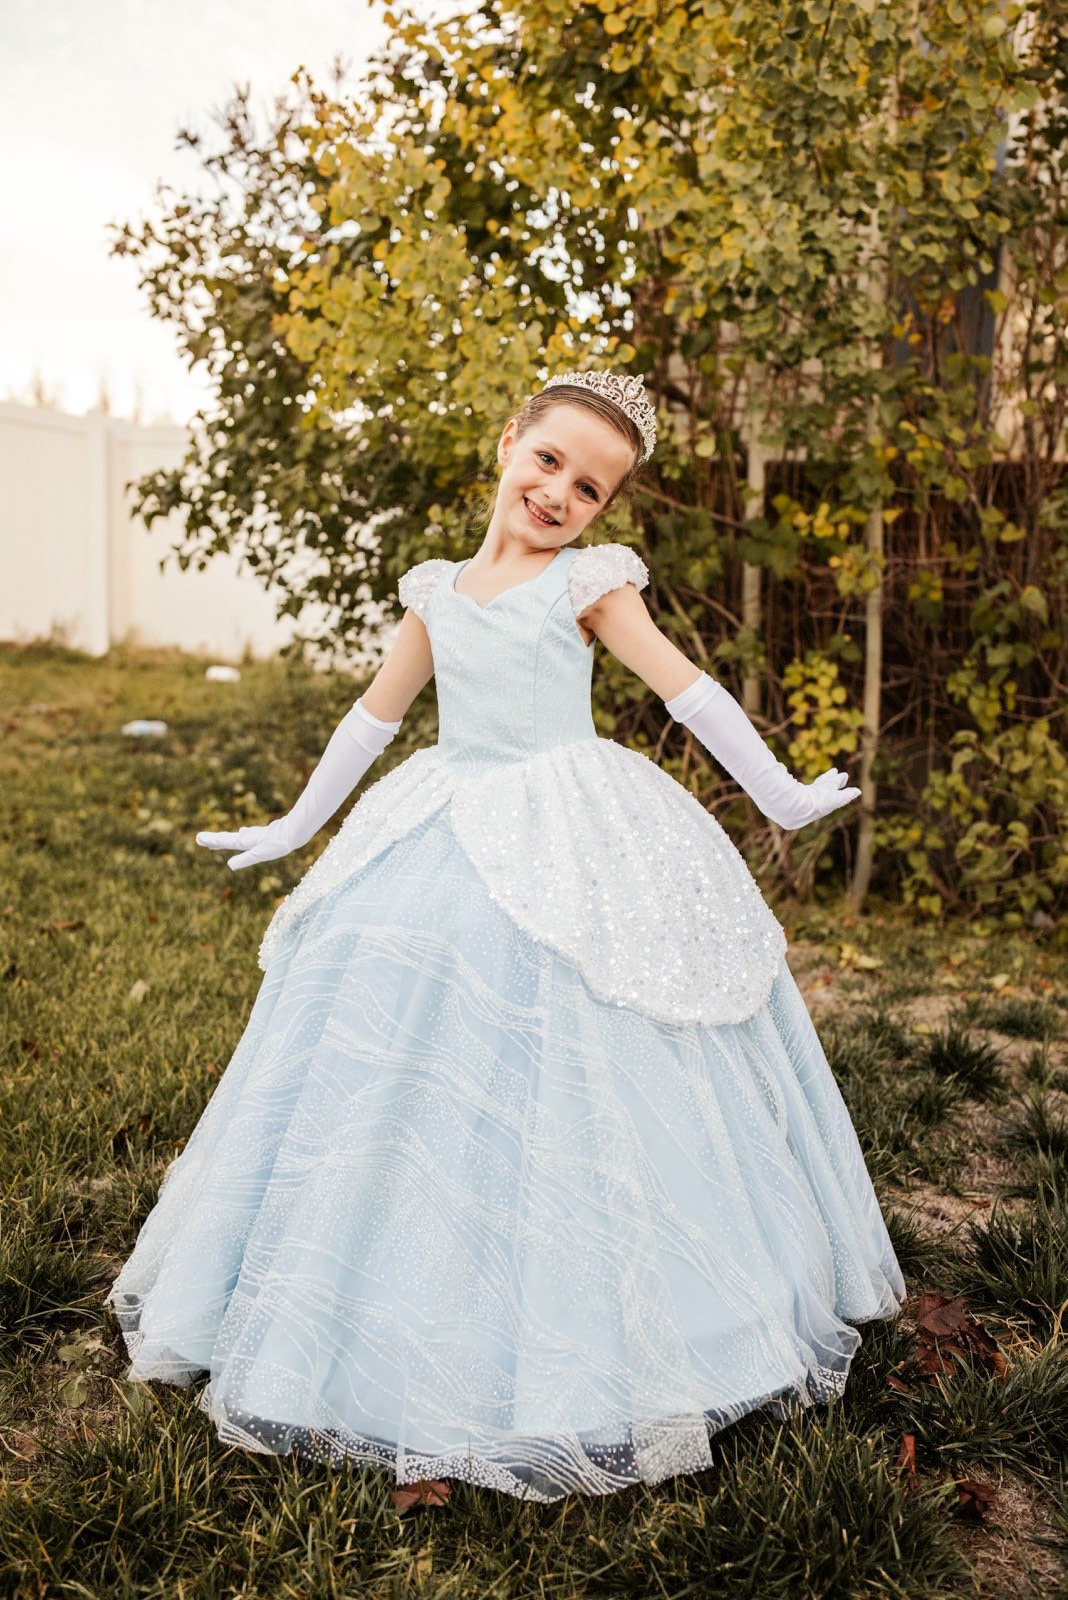 Details more than 148 cinderella dress for kids - seven.edu.vn